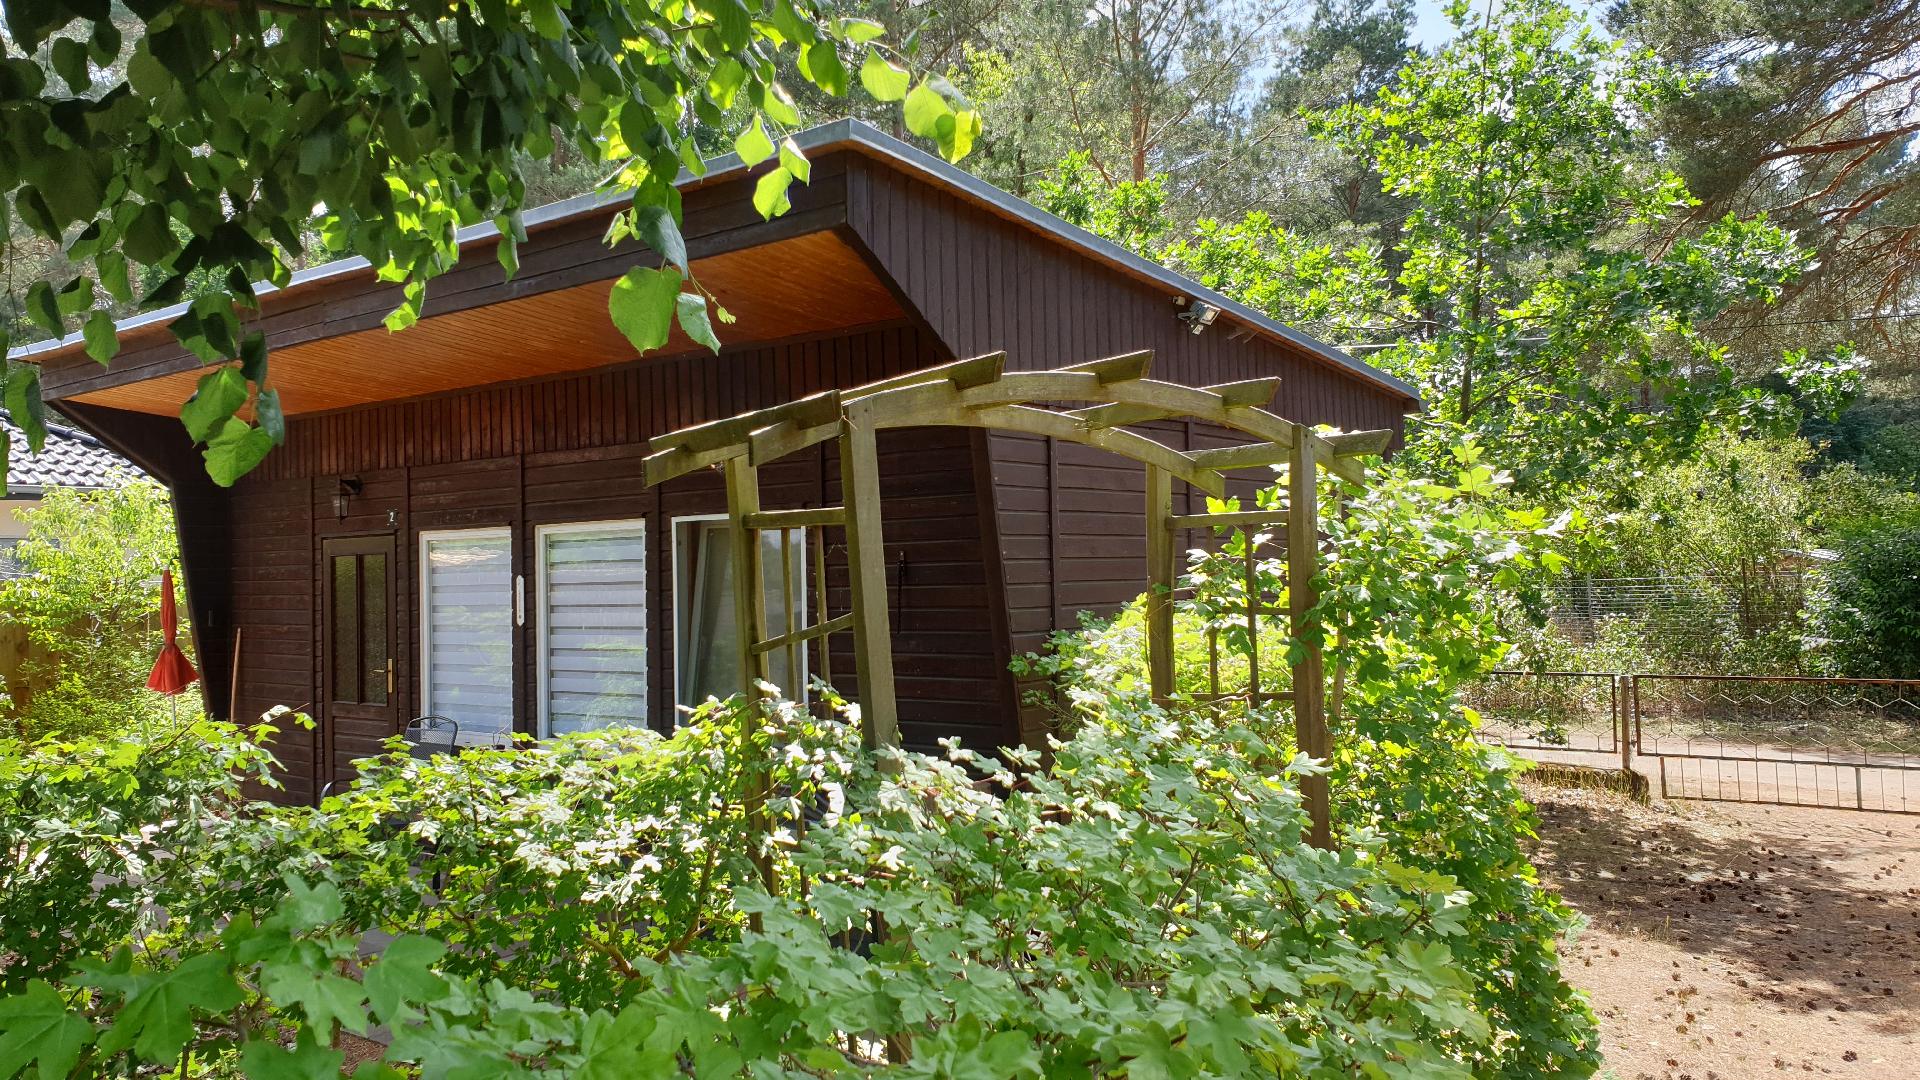 Holz-Bungalow mit Terrasse Ferienhaus  Havelland Fläming